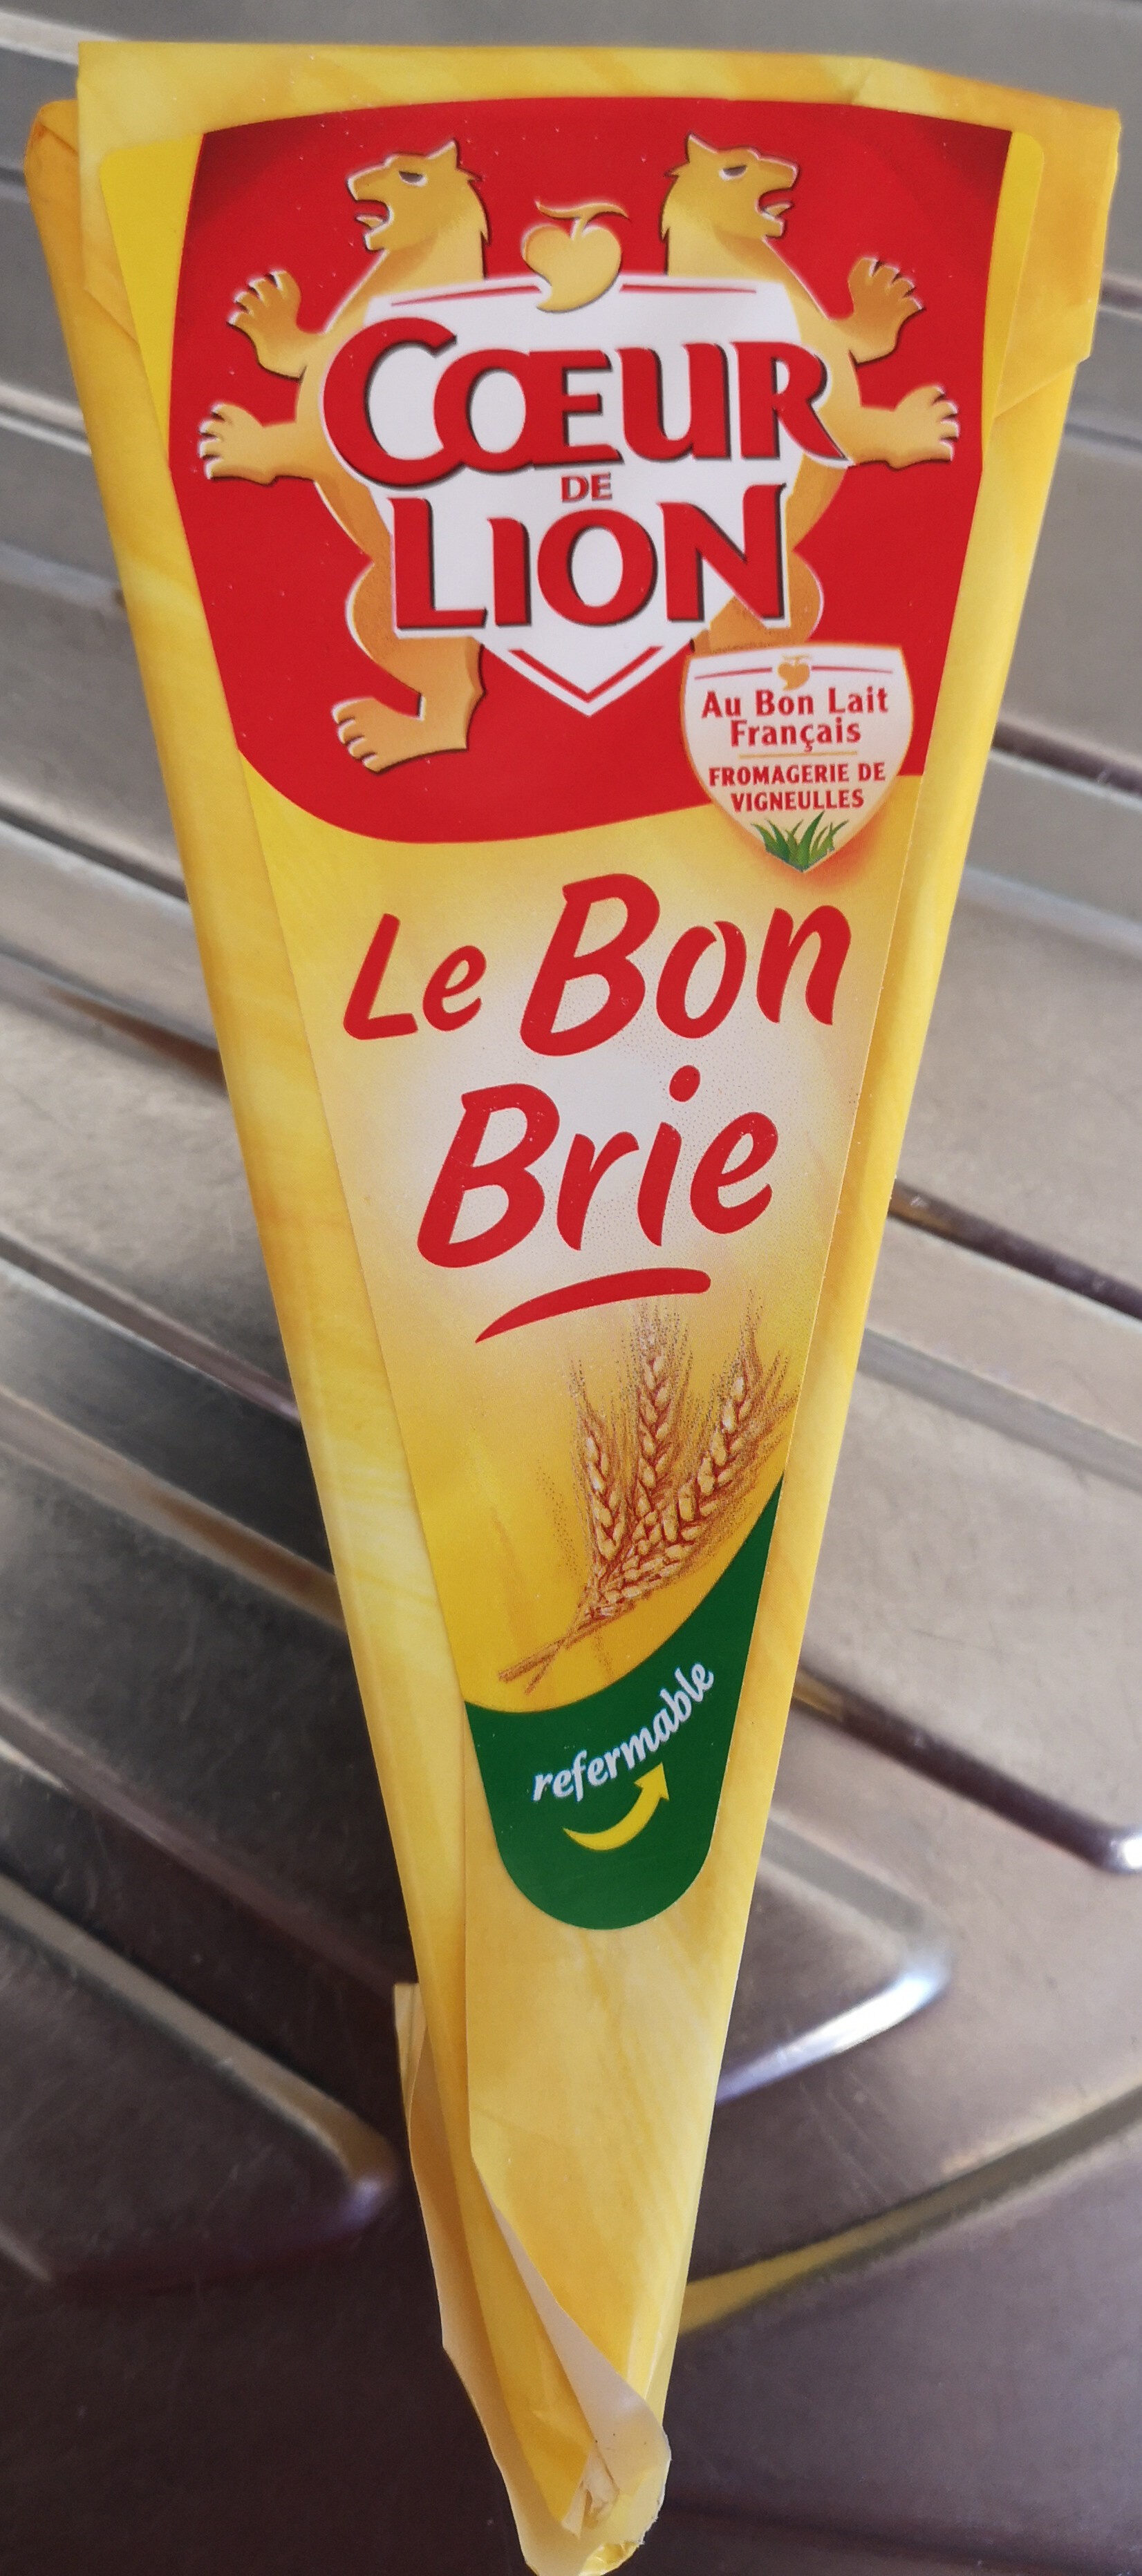 Le Bon Brie 200g - Product - fr